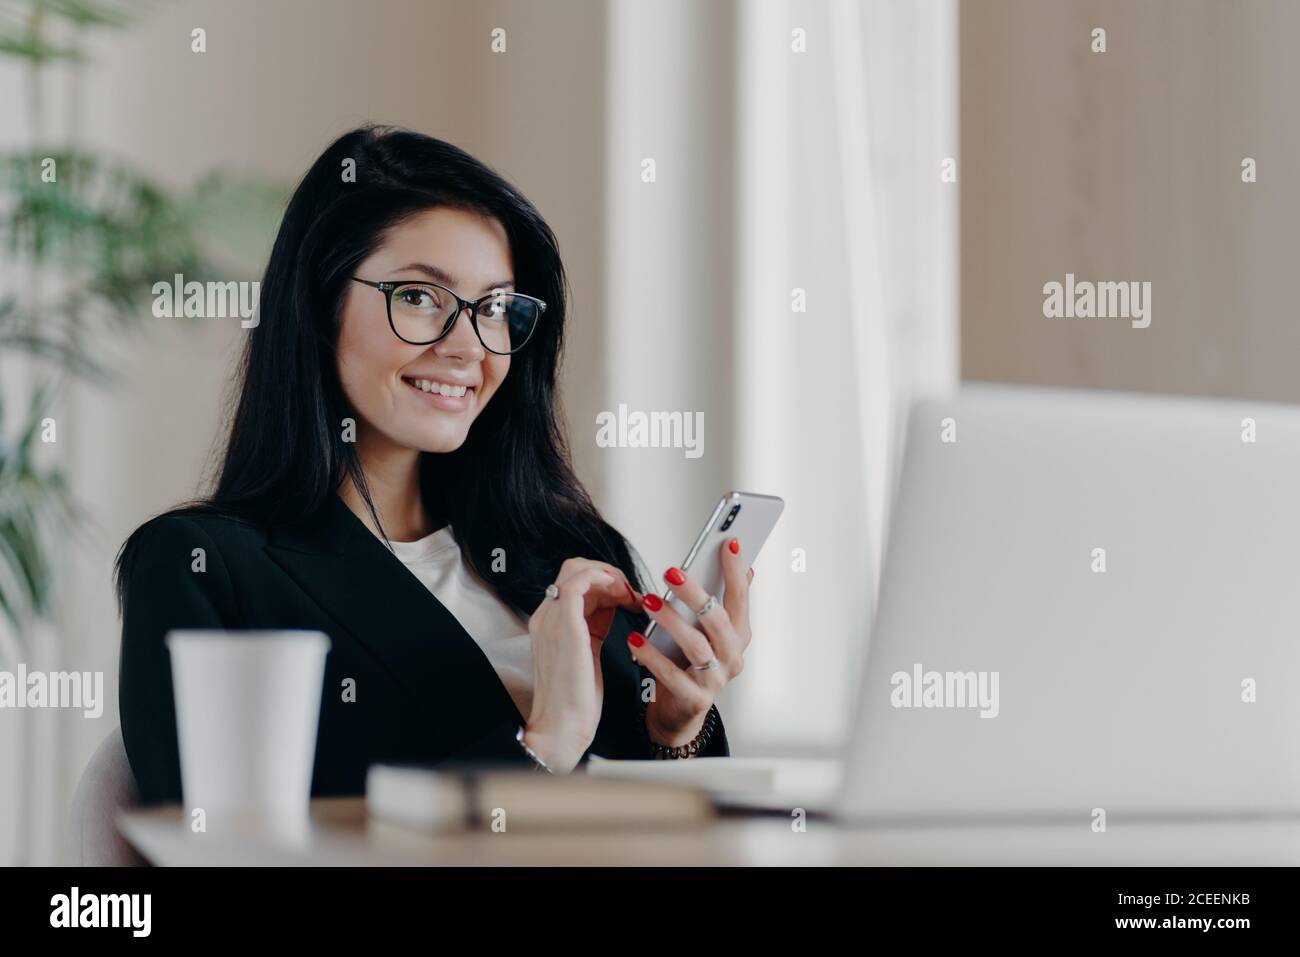 Prise de vue horizontale des messages européens de la femme brunette heureuse sur smartphone moderne, donne une consultation en ligne, sourit positivement, porte des lunettes et pour Banque D'Images